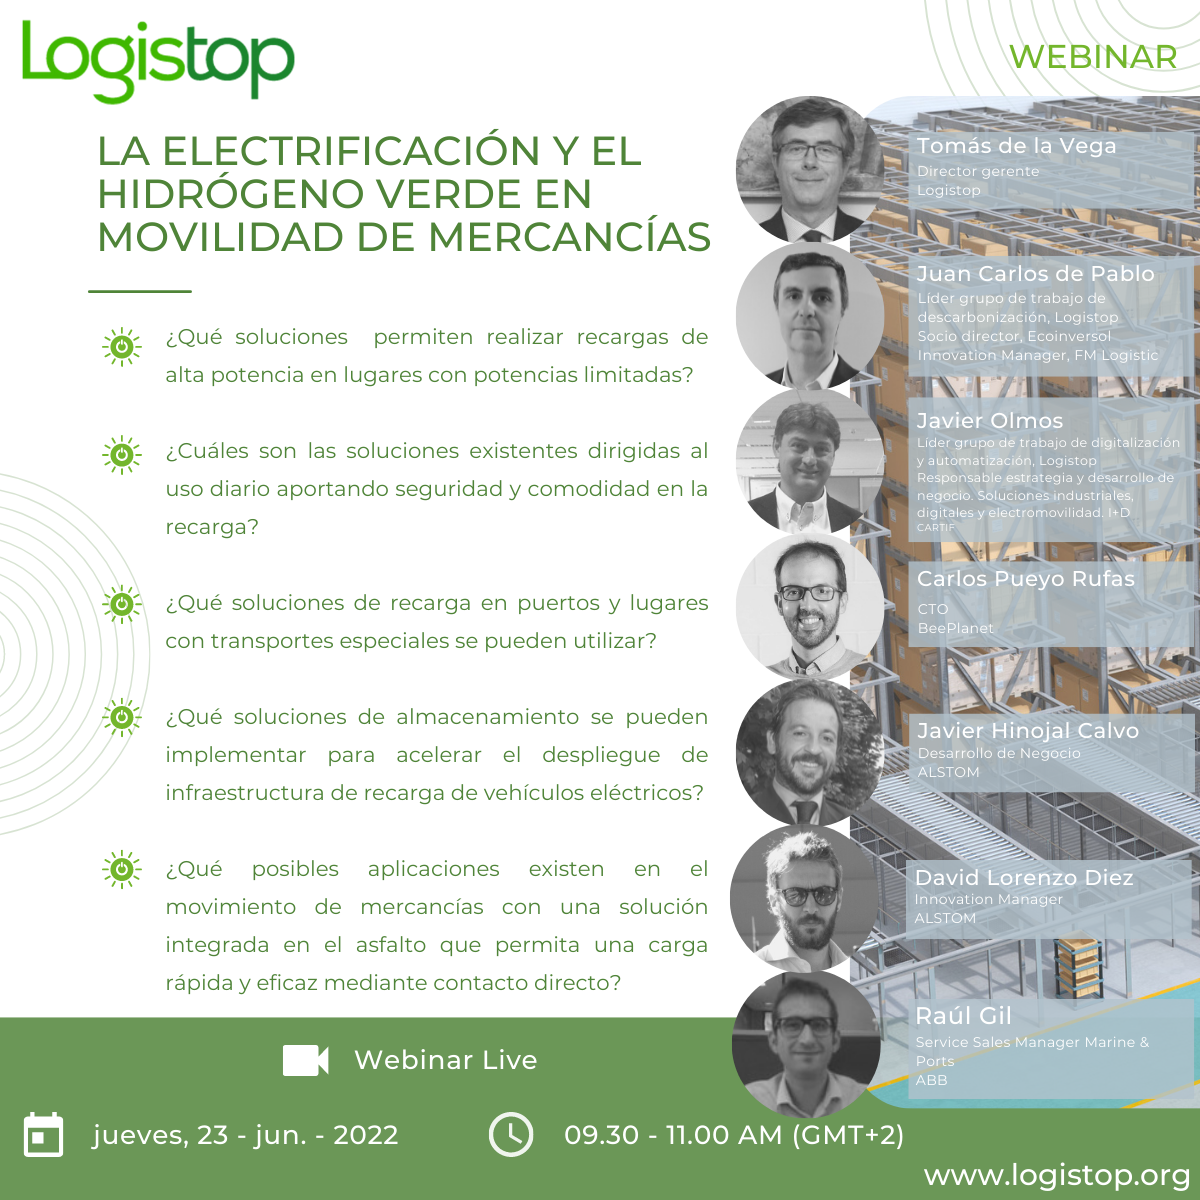 Webinar Logistop “La electrificación y el hidrógeno verde en movilidad de mercancías”